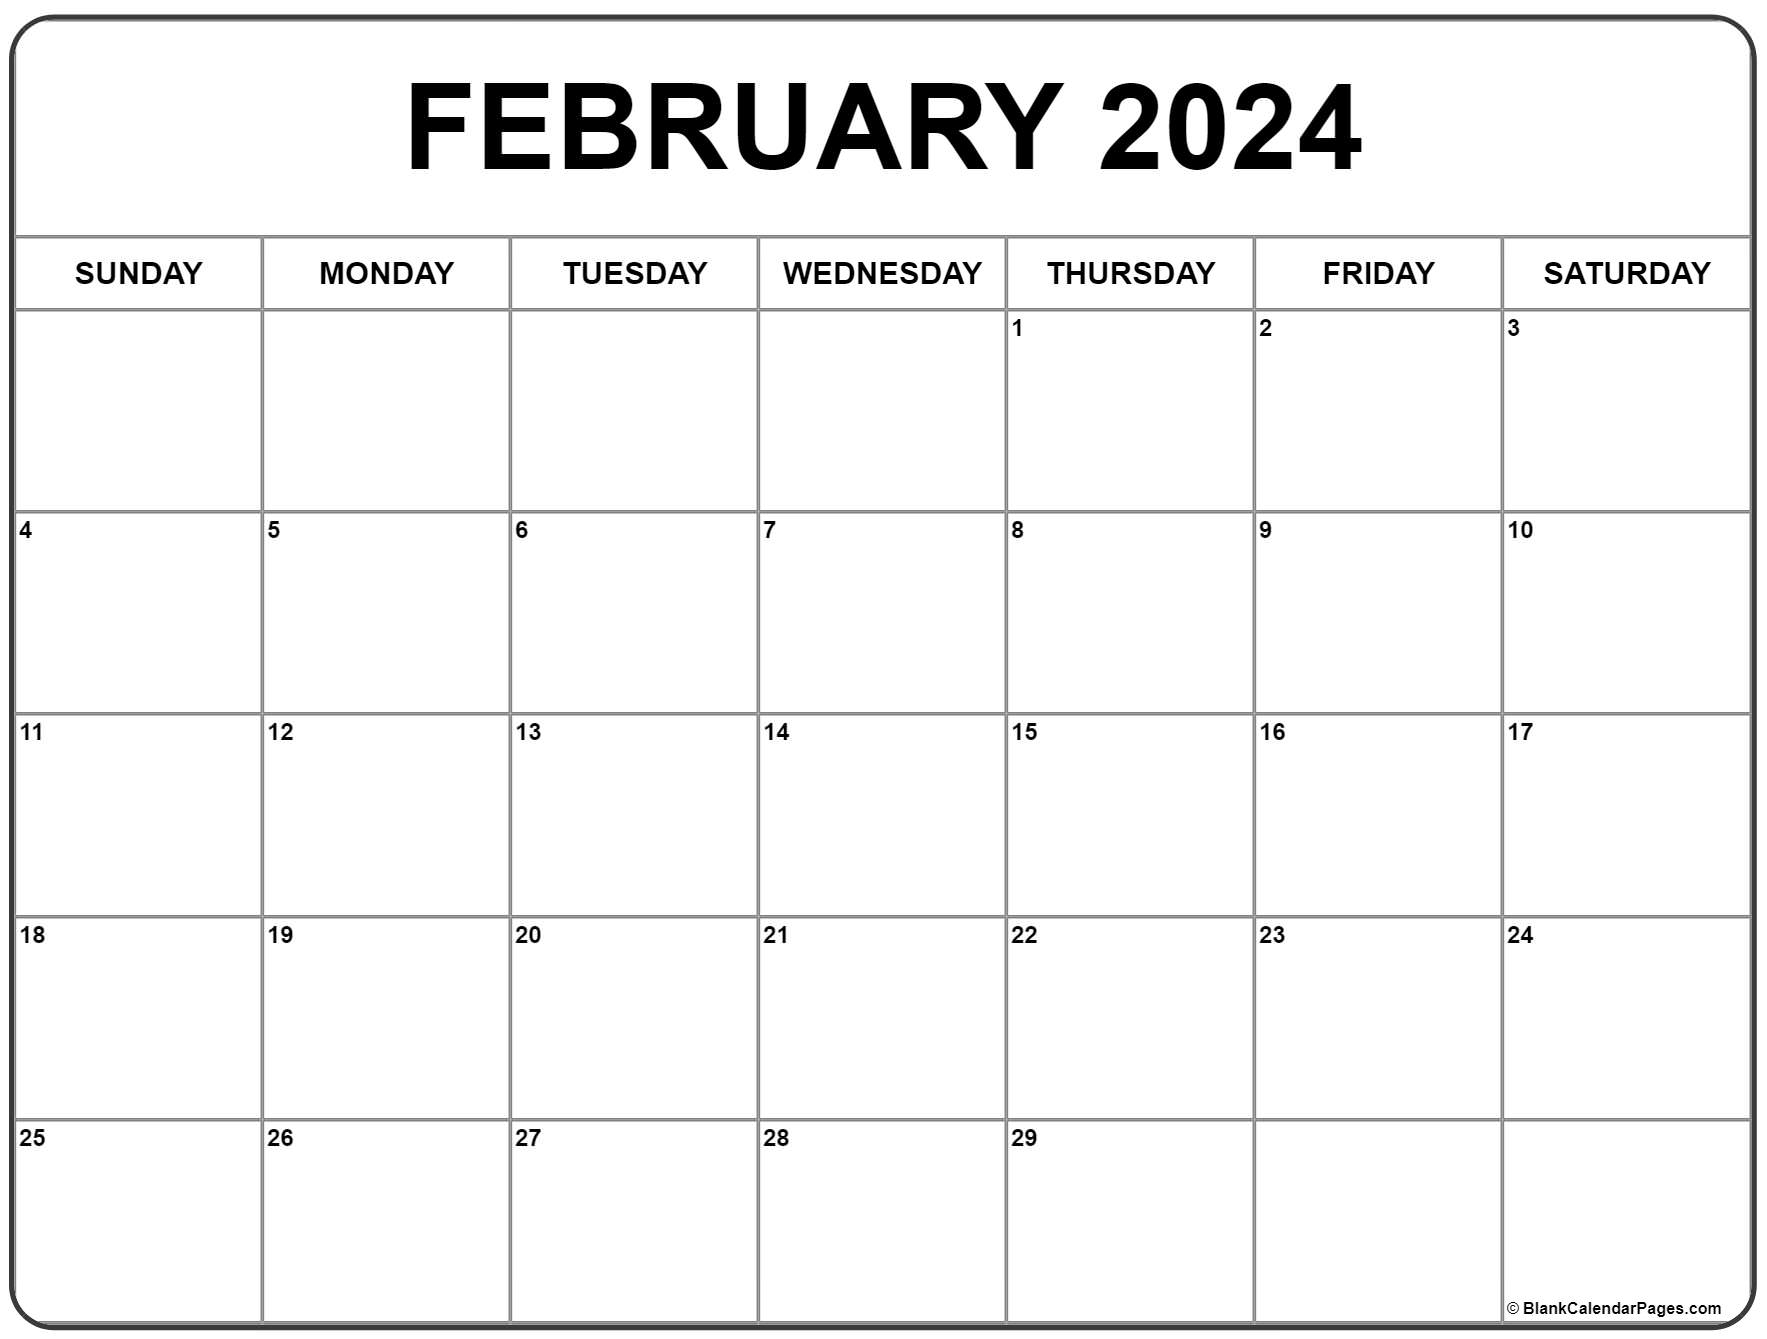 February 2024 Calendar | Free Printable Calendar for Printable Month Calendar February 2024